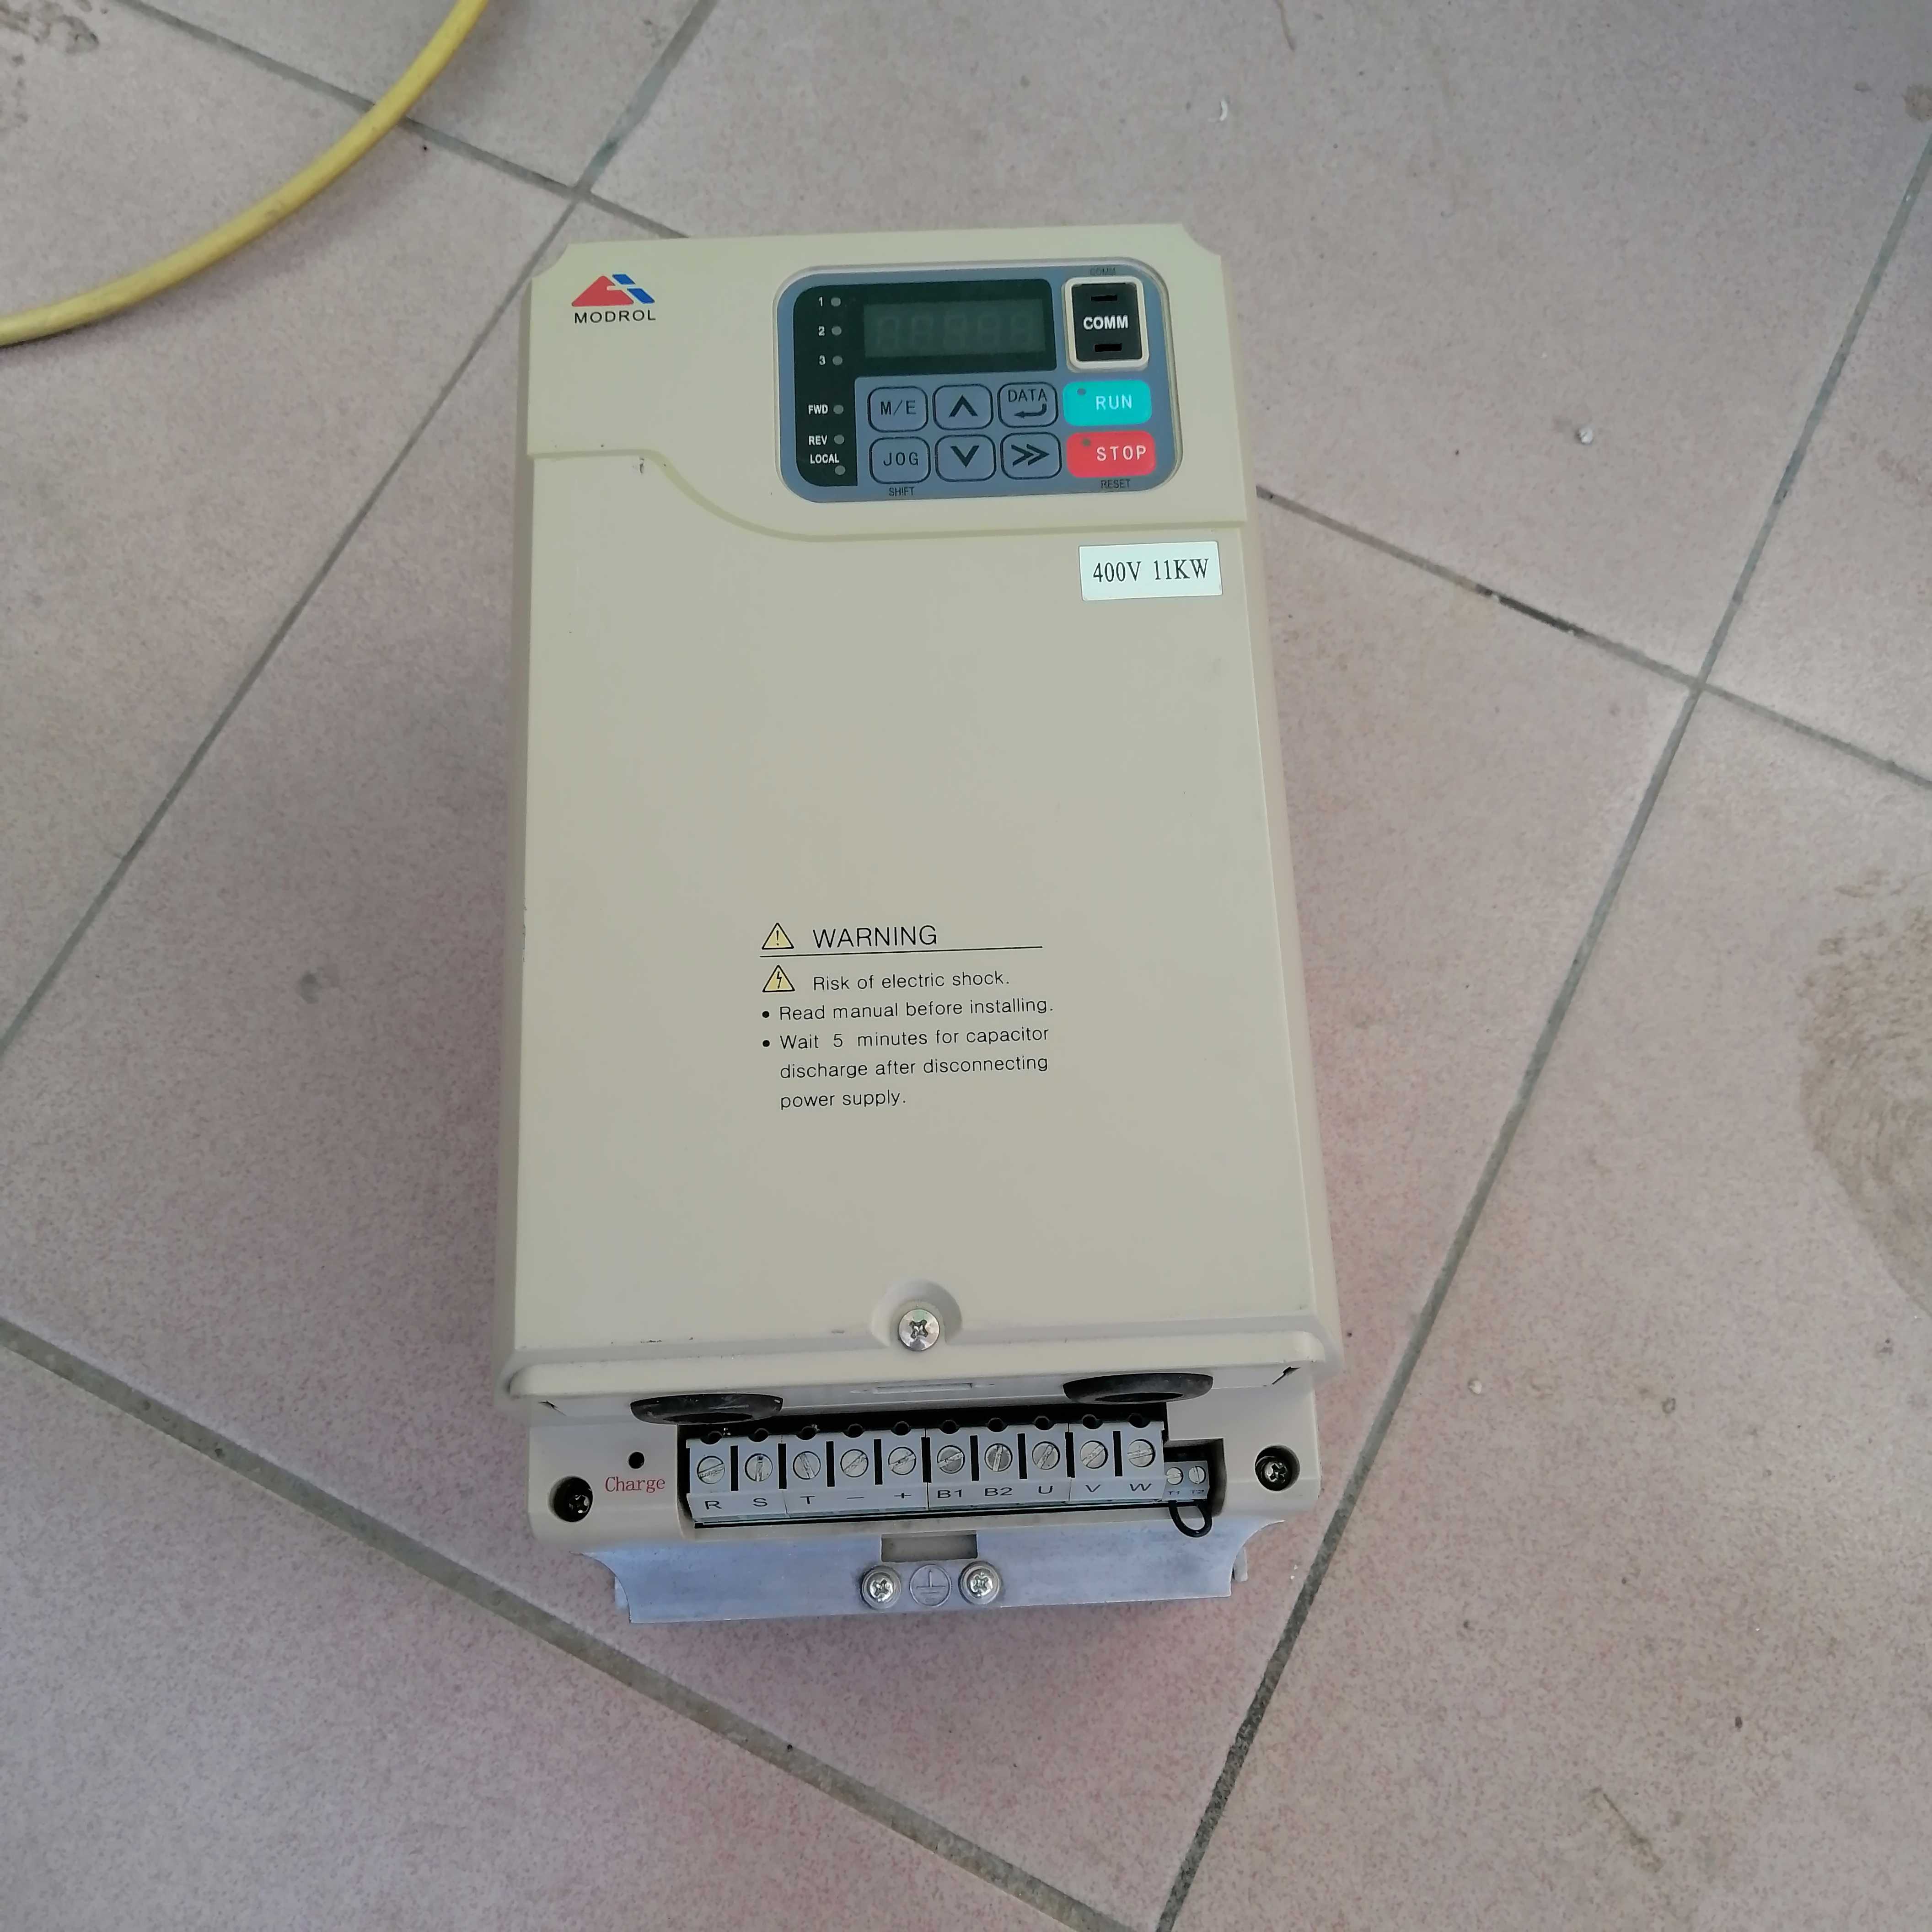 IMS-H4-4022G 蒙德注塑机变频器维修